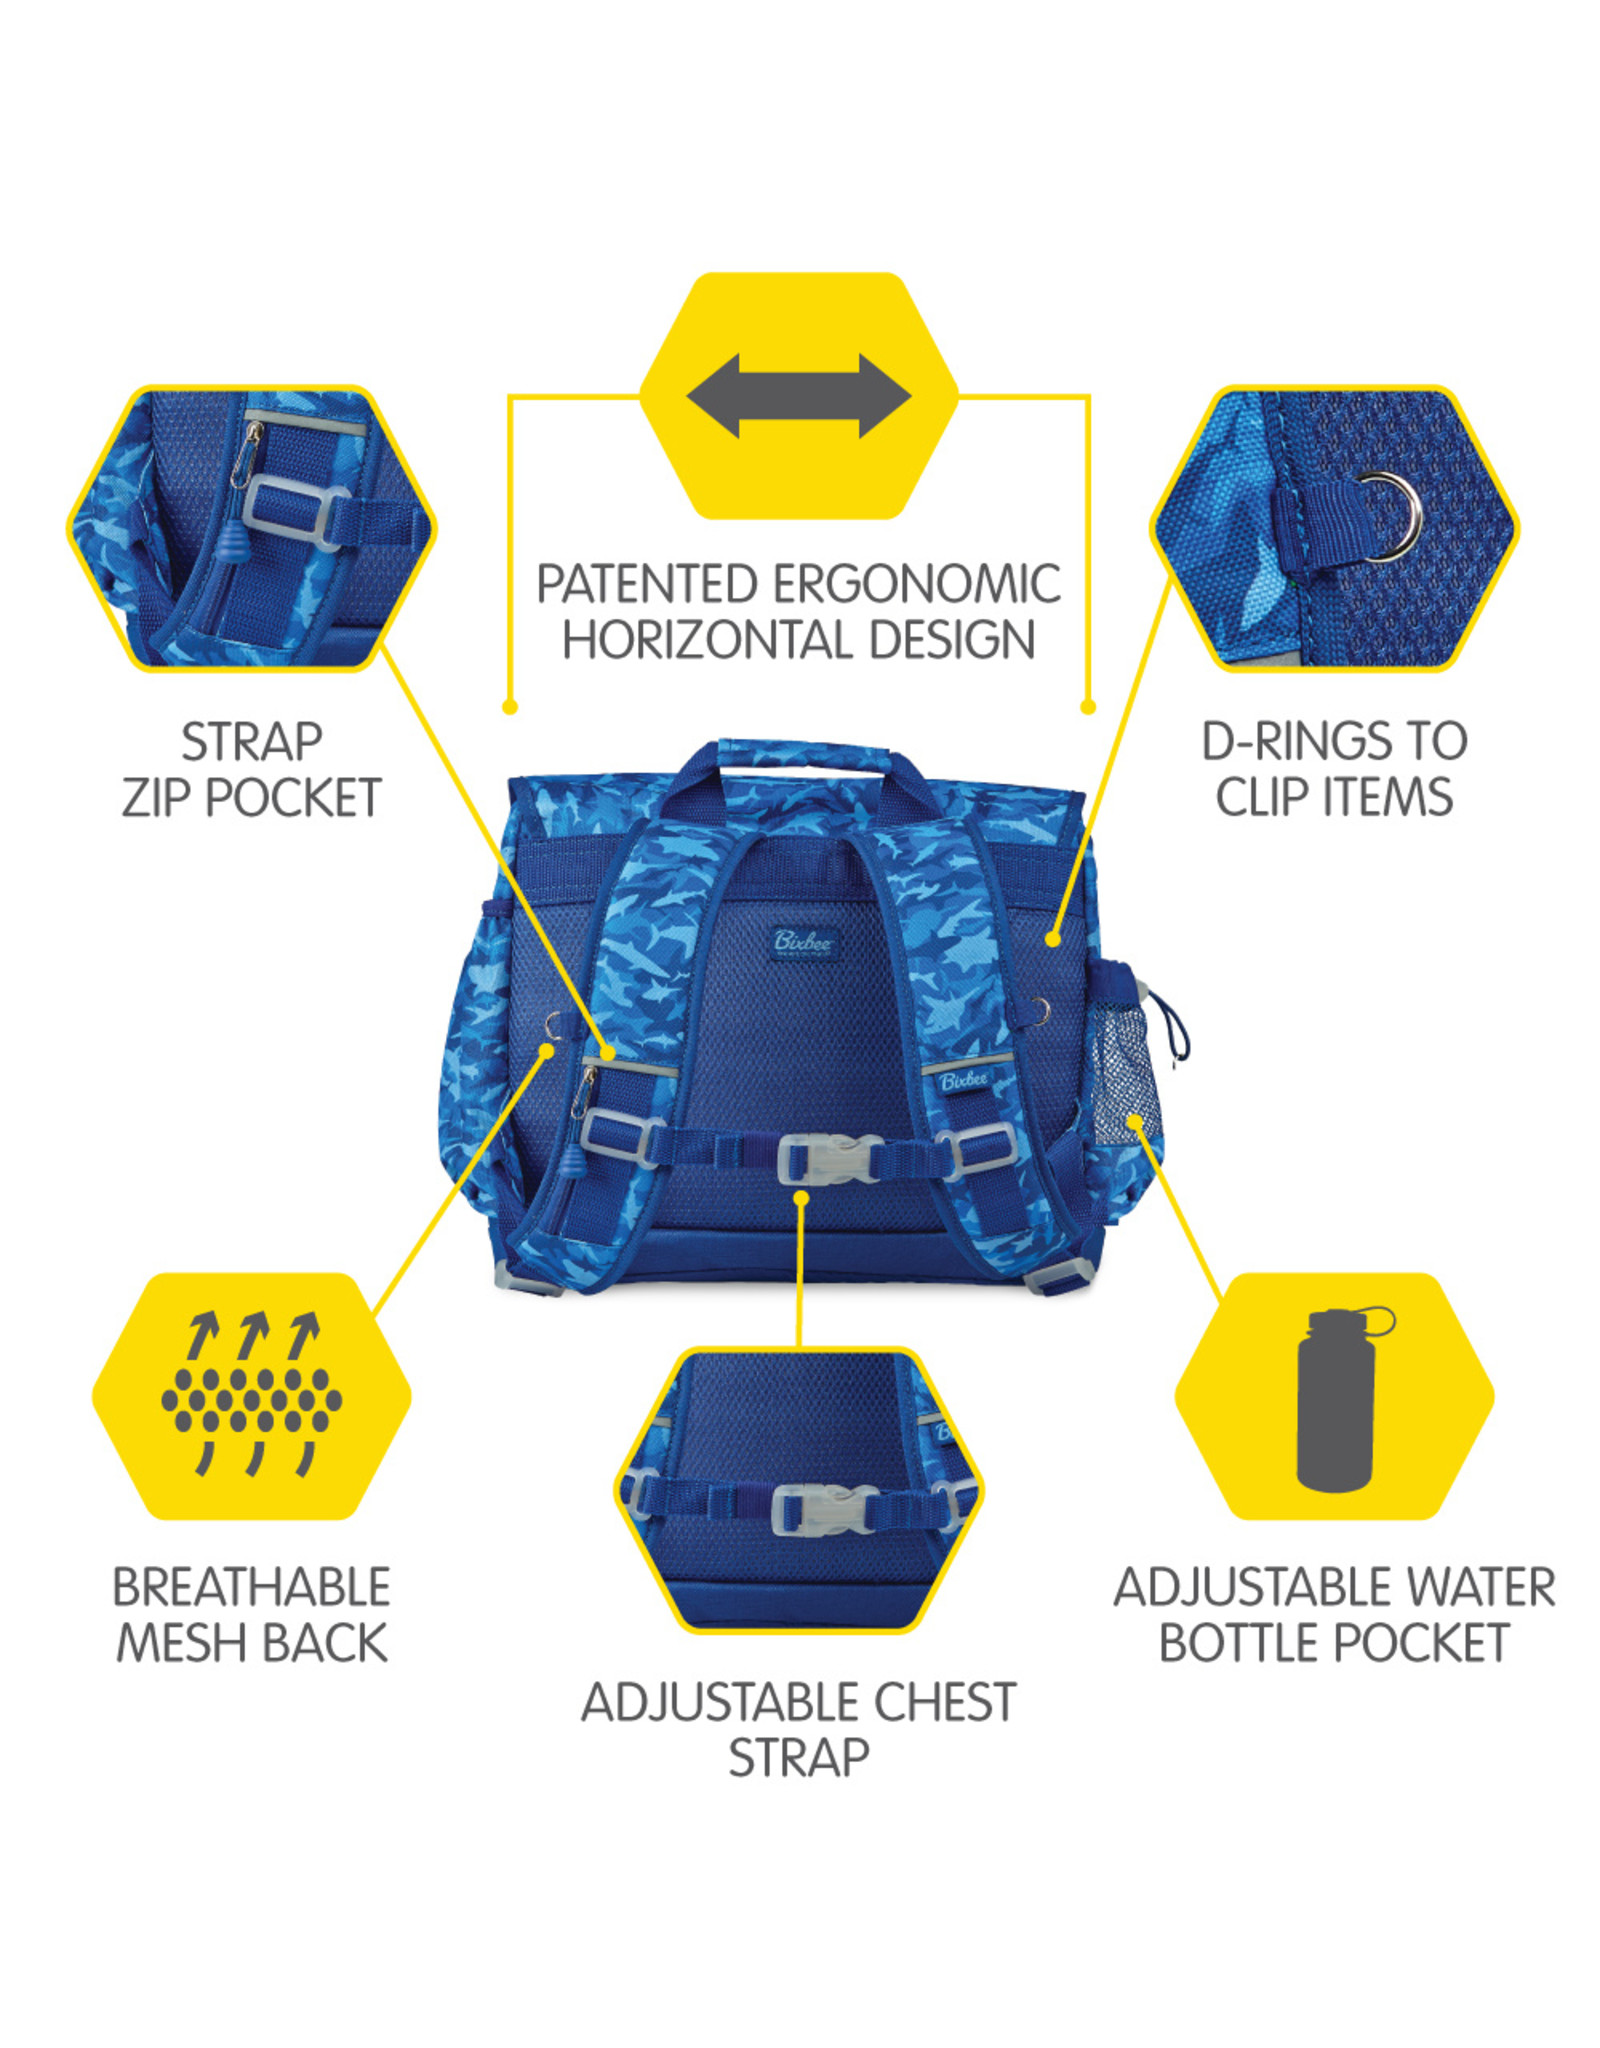 Bixbee Shark Camo Backpack (Medium)